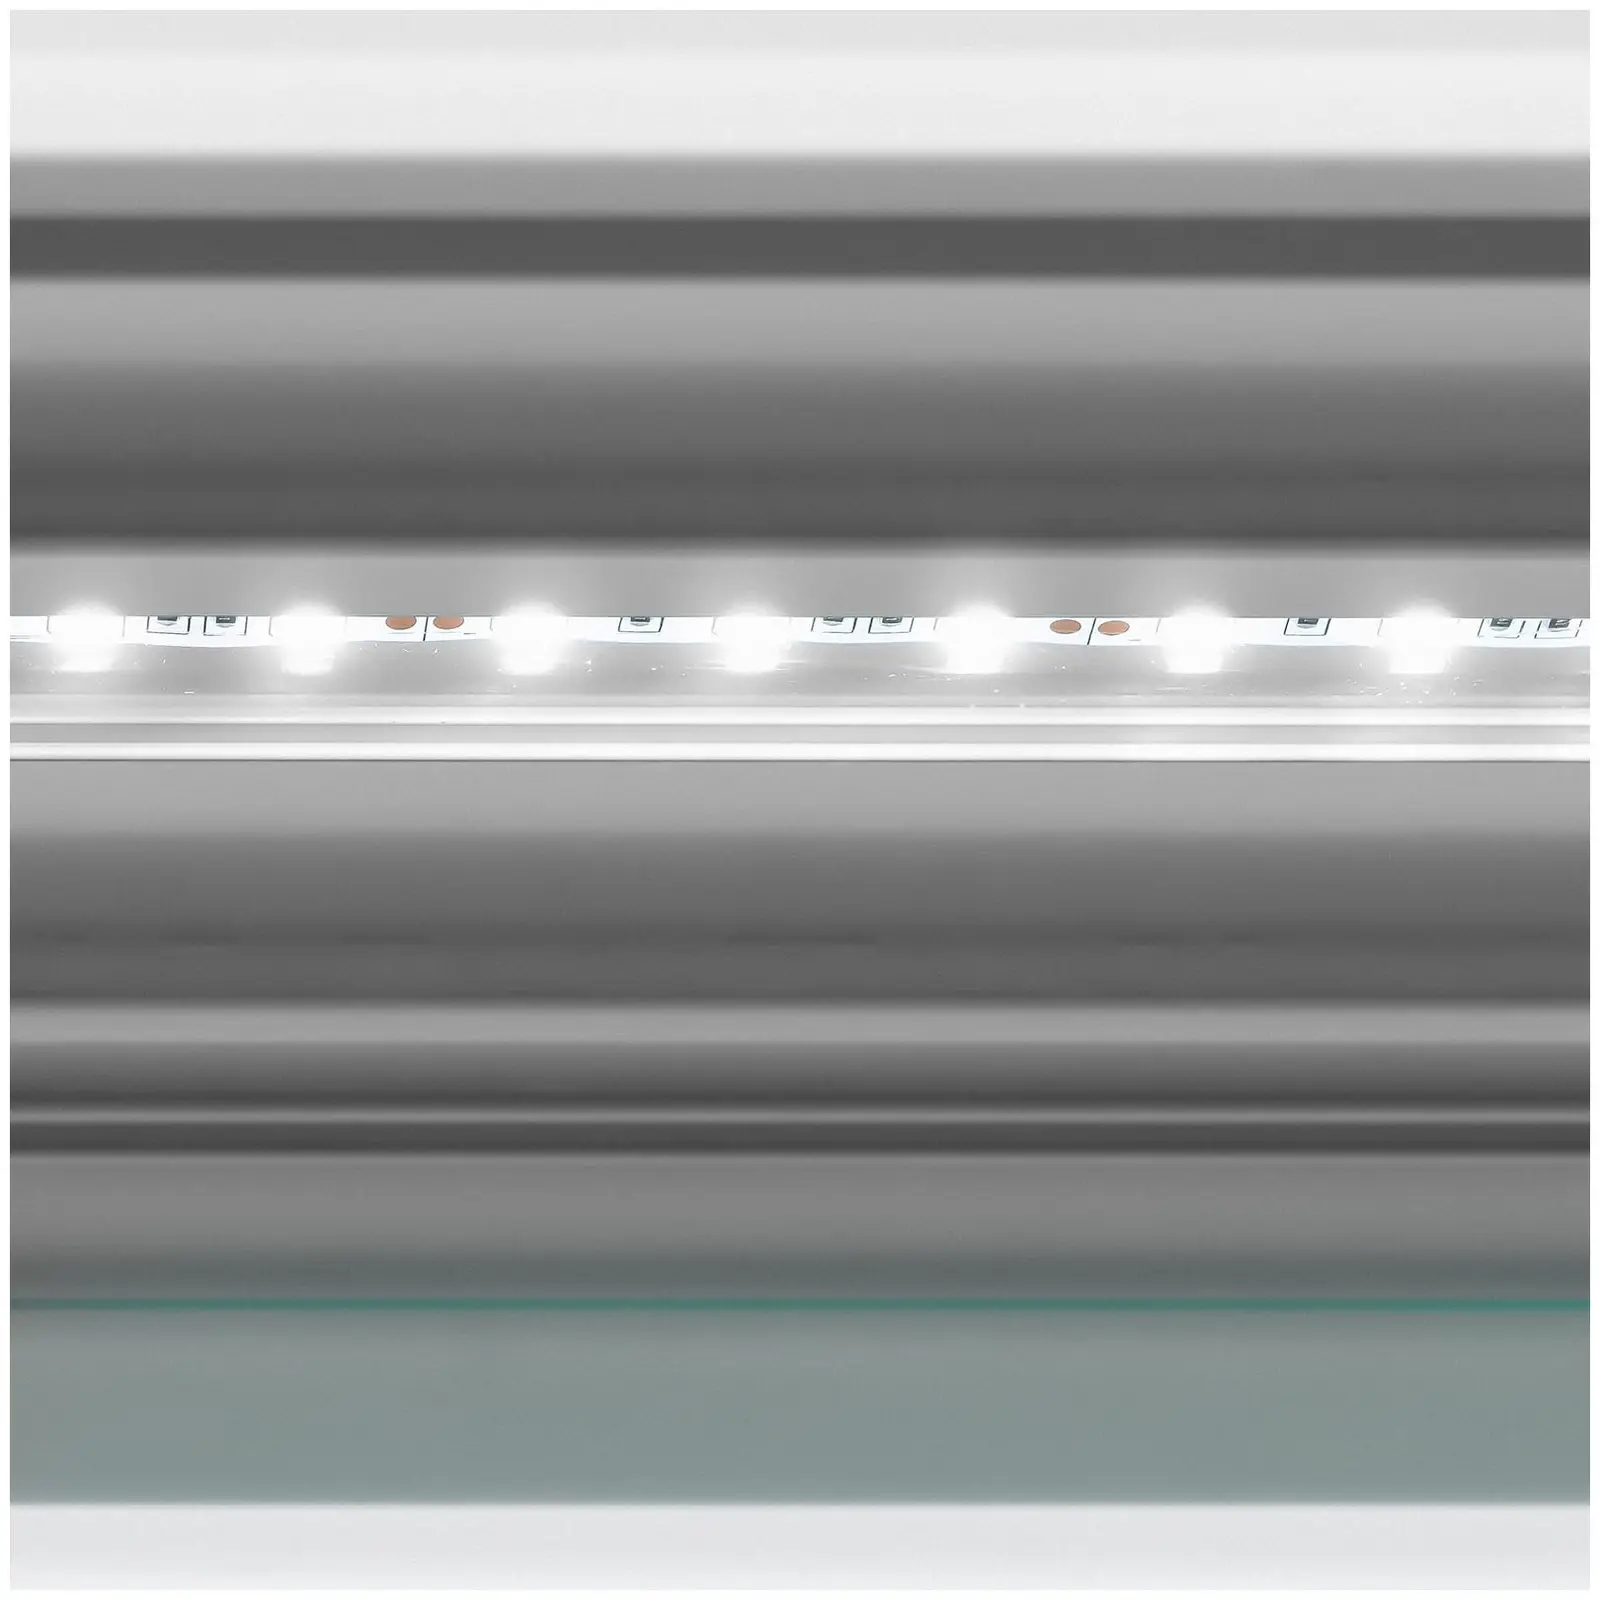 Banco vetrina gelato - 358 L - LED - 4 ruote - Verde chiaro, argento